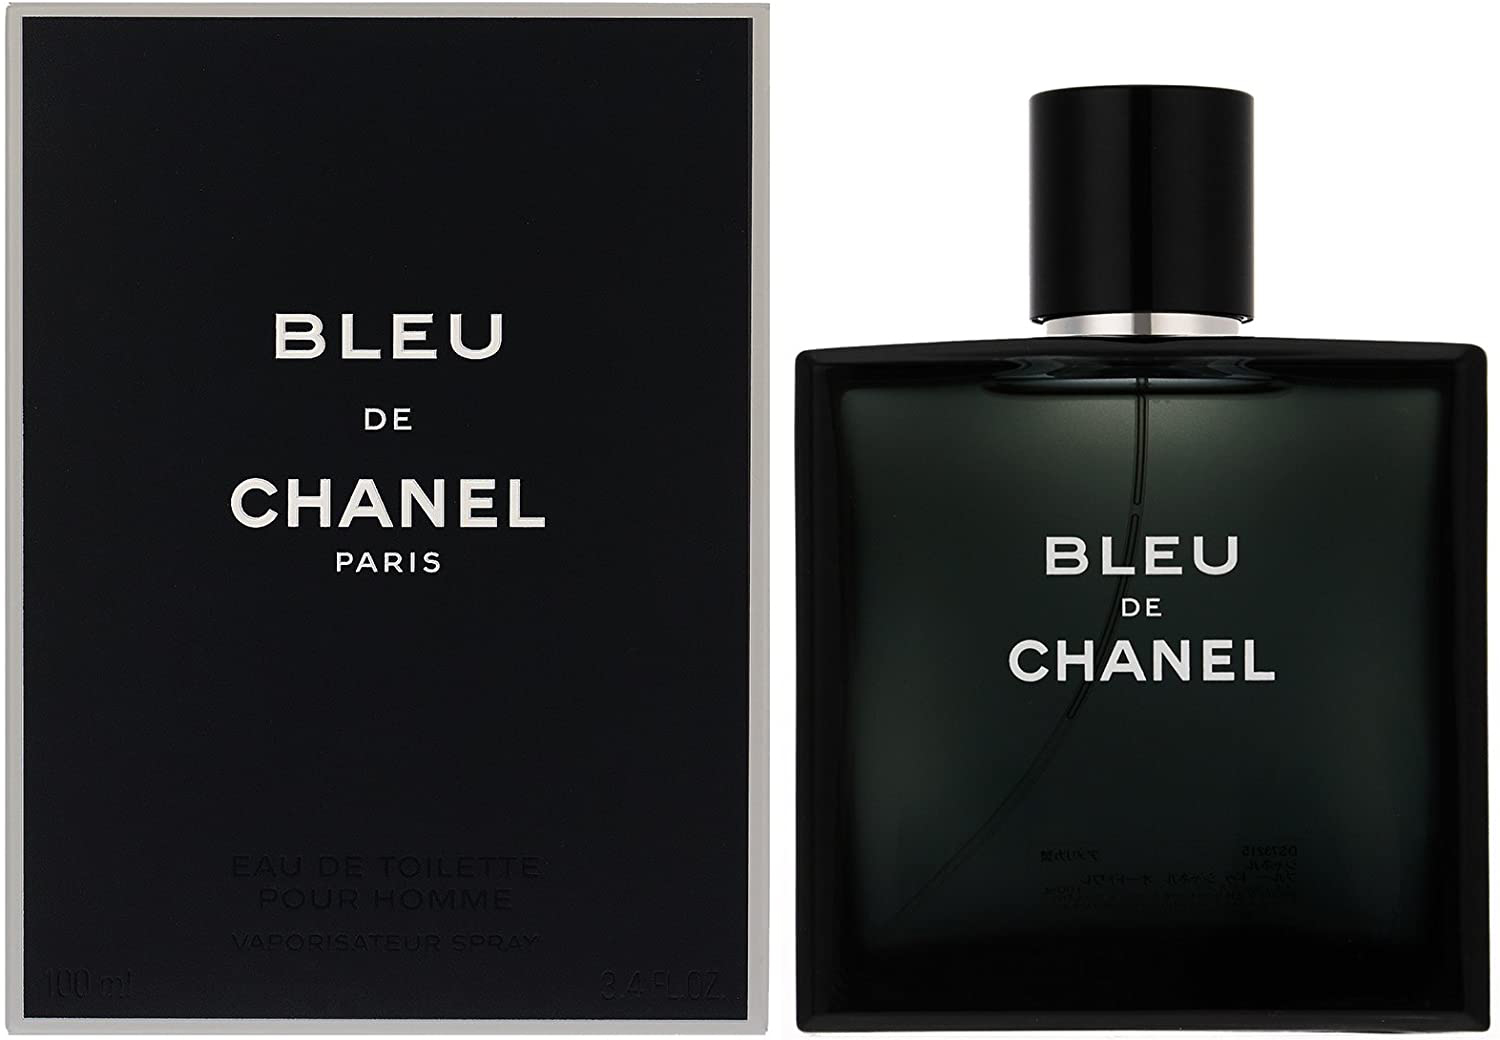 Bleu de CHANEL  Мужская парфюмерия  Ароматы  CHANEL